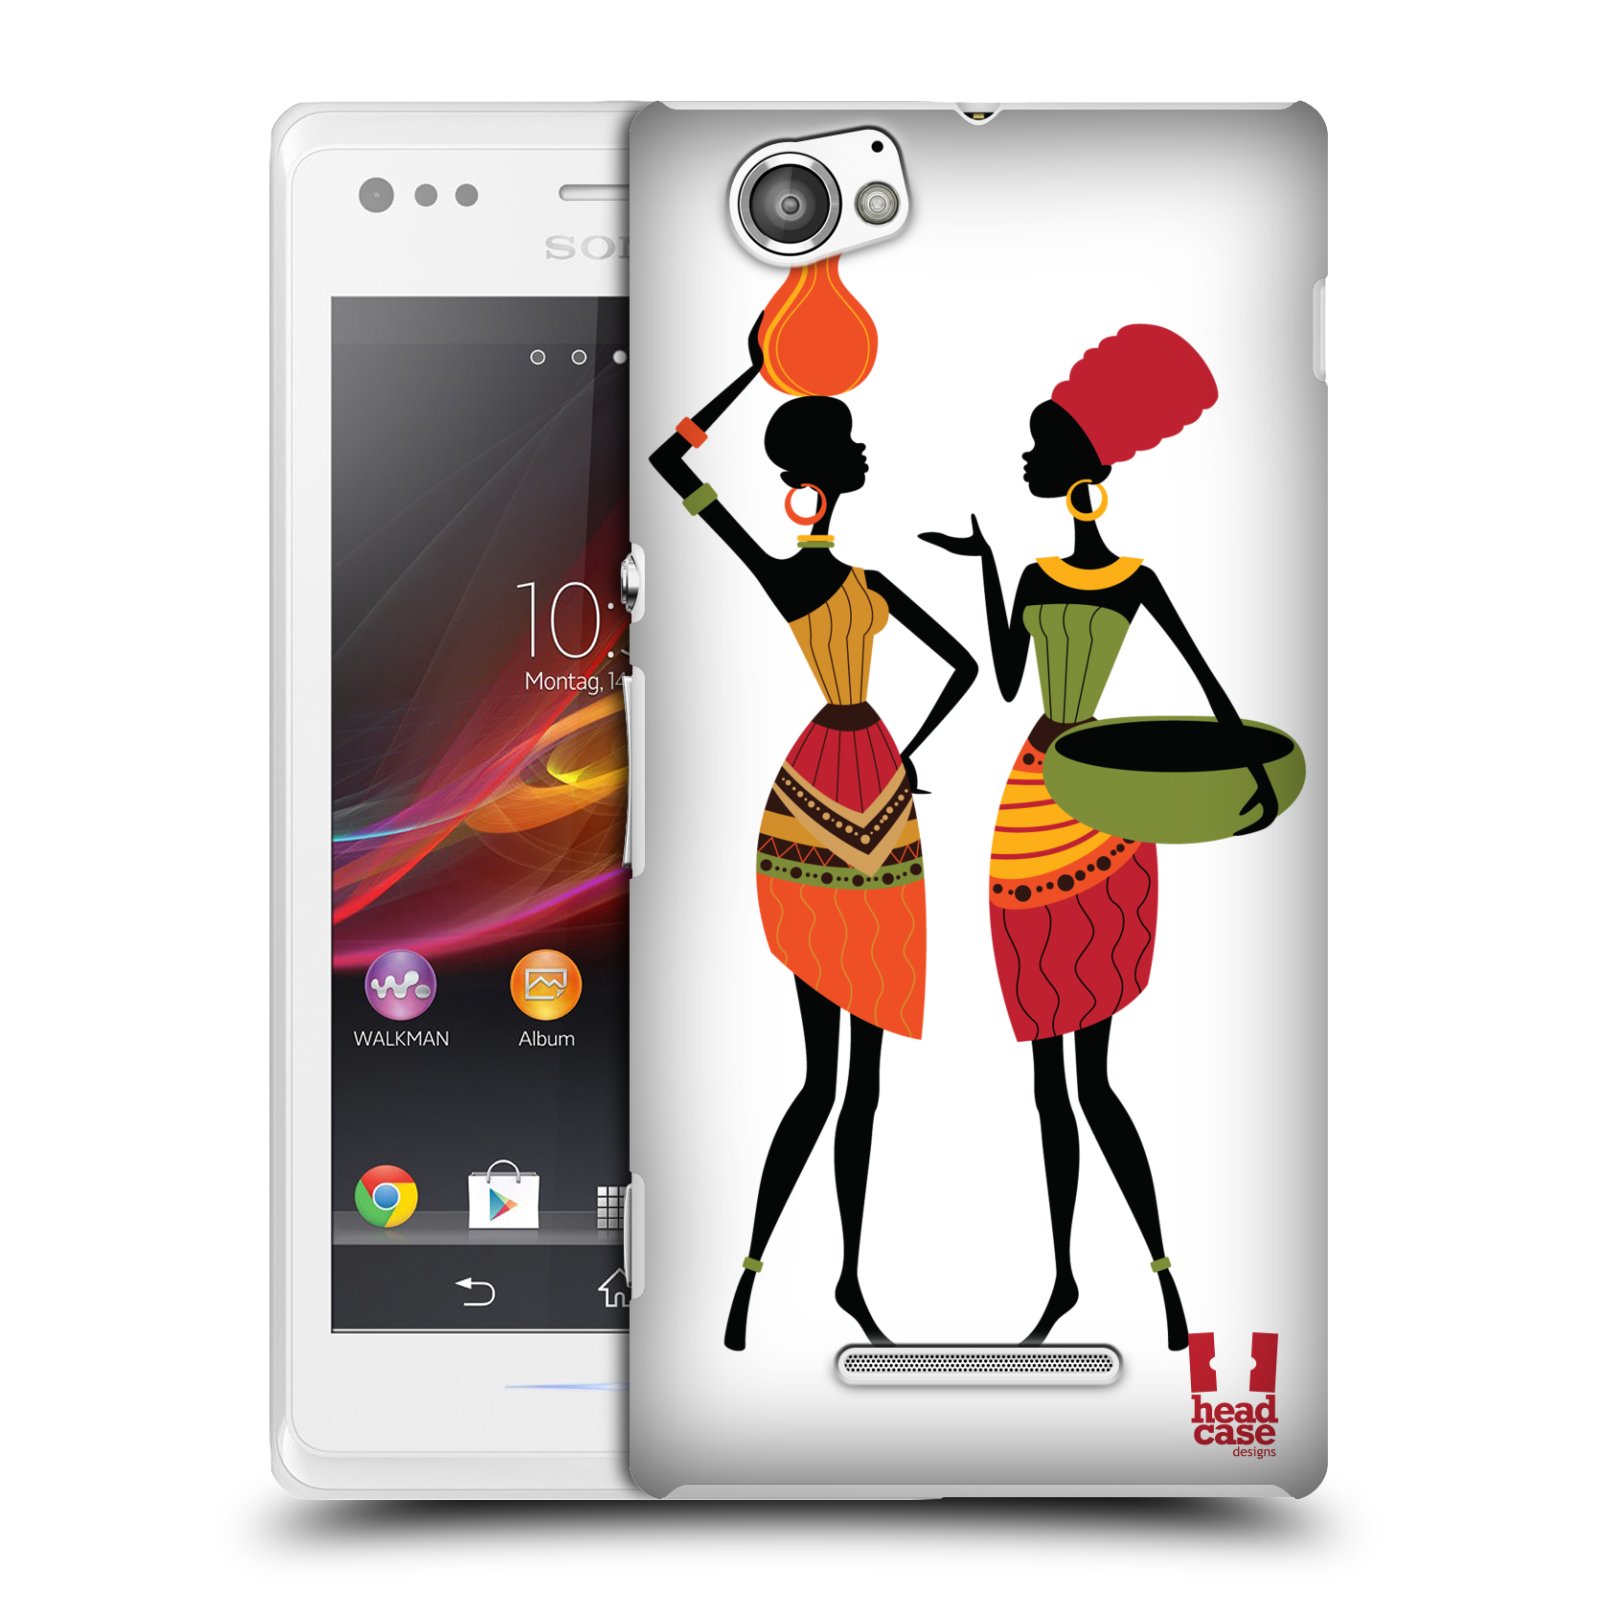 HEAD CASE plastový obal na mobil Sony Xperia M vzor Africké motivy DRBNY